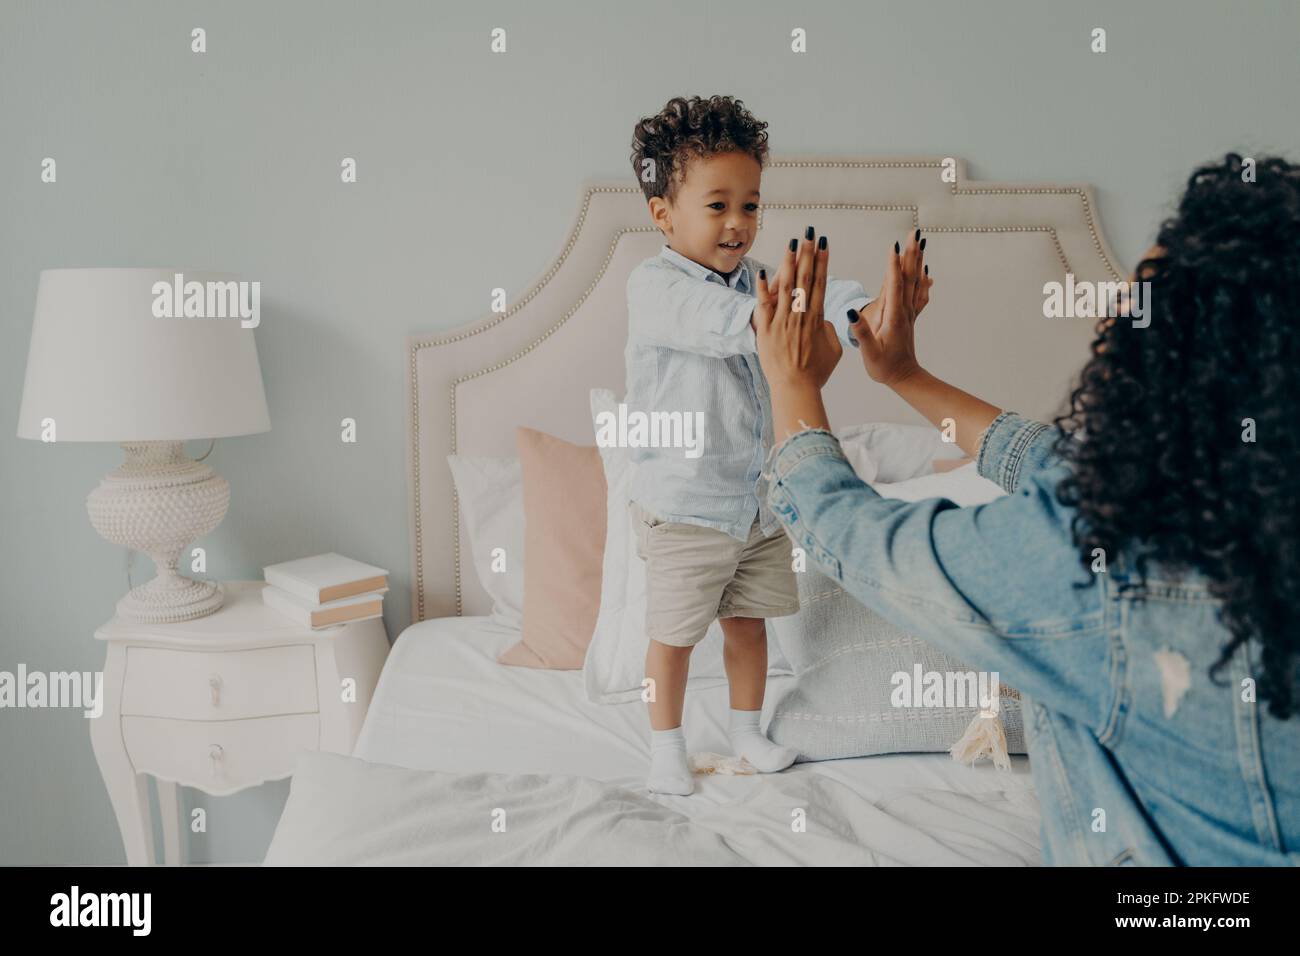 Süßes kleines afro-amerikanisches Kind spielt spannende Spiele auf einem großen Bett in einem hellen Schlafzimmer mit seiner fürsorglichen lockigen Mutter, die ihre Hände zusammenhält. Werteliste Stockfoto